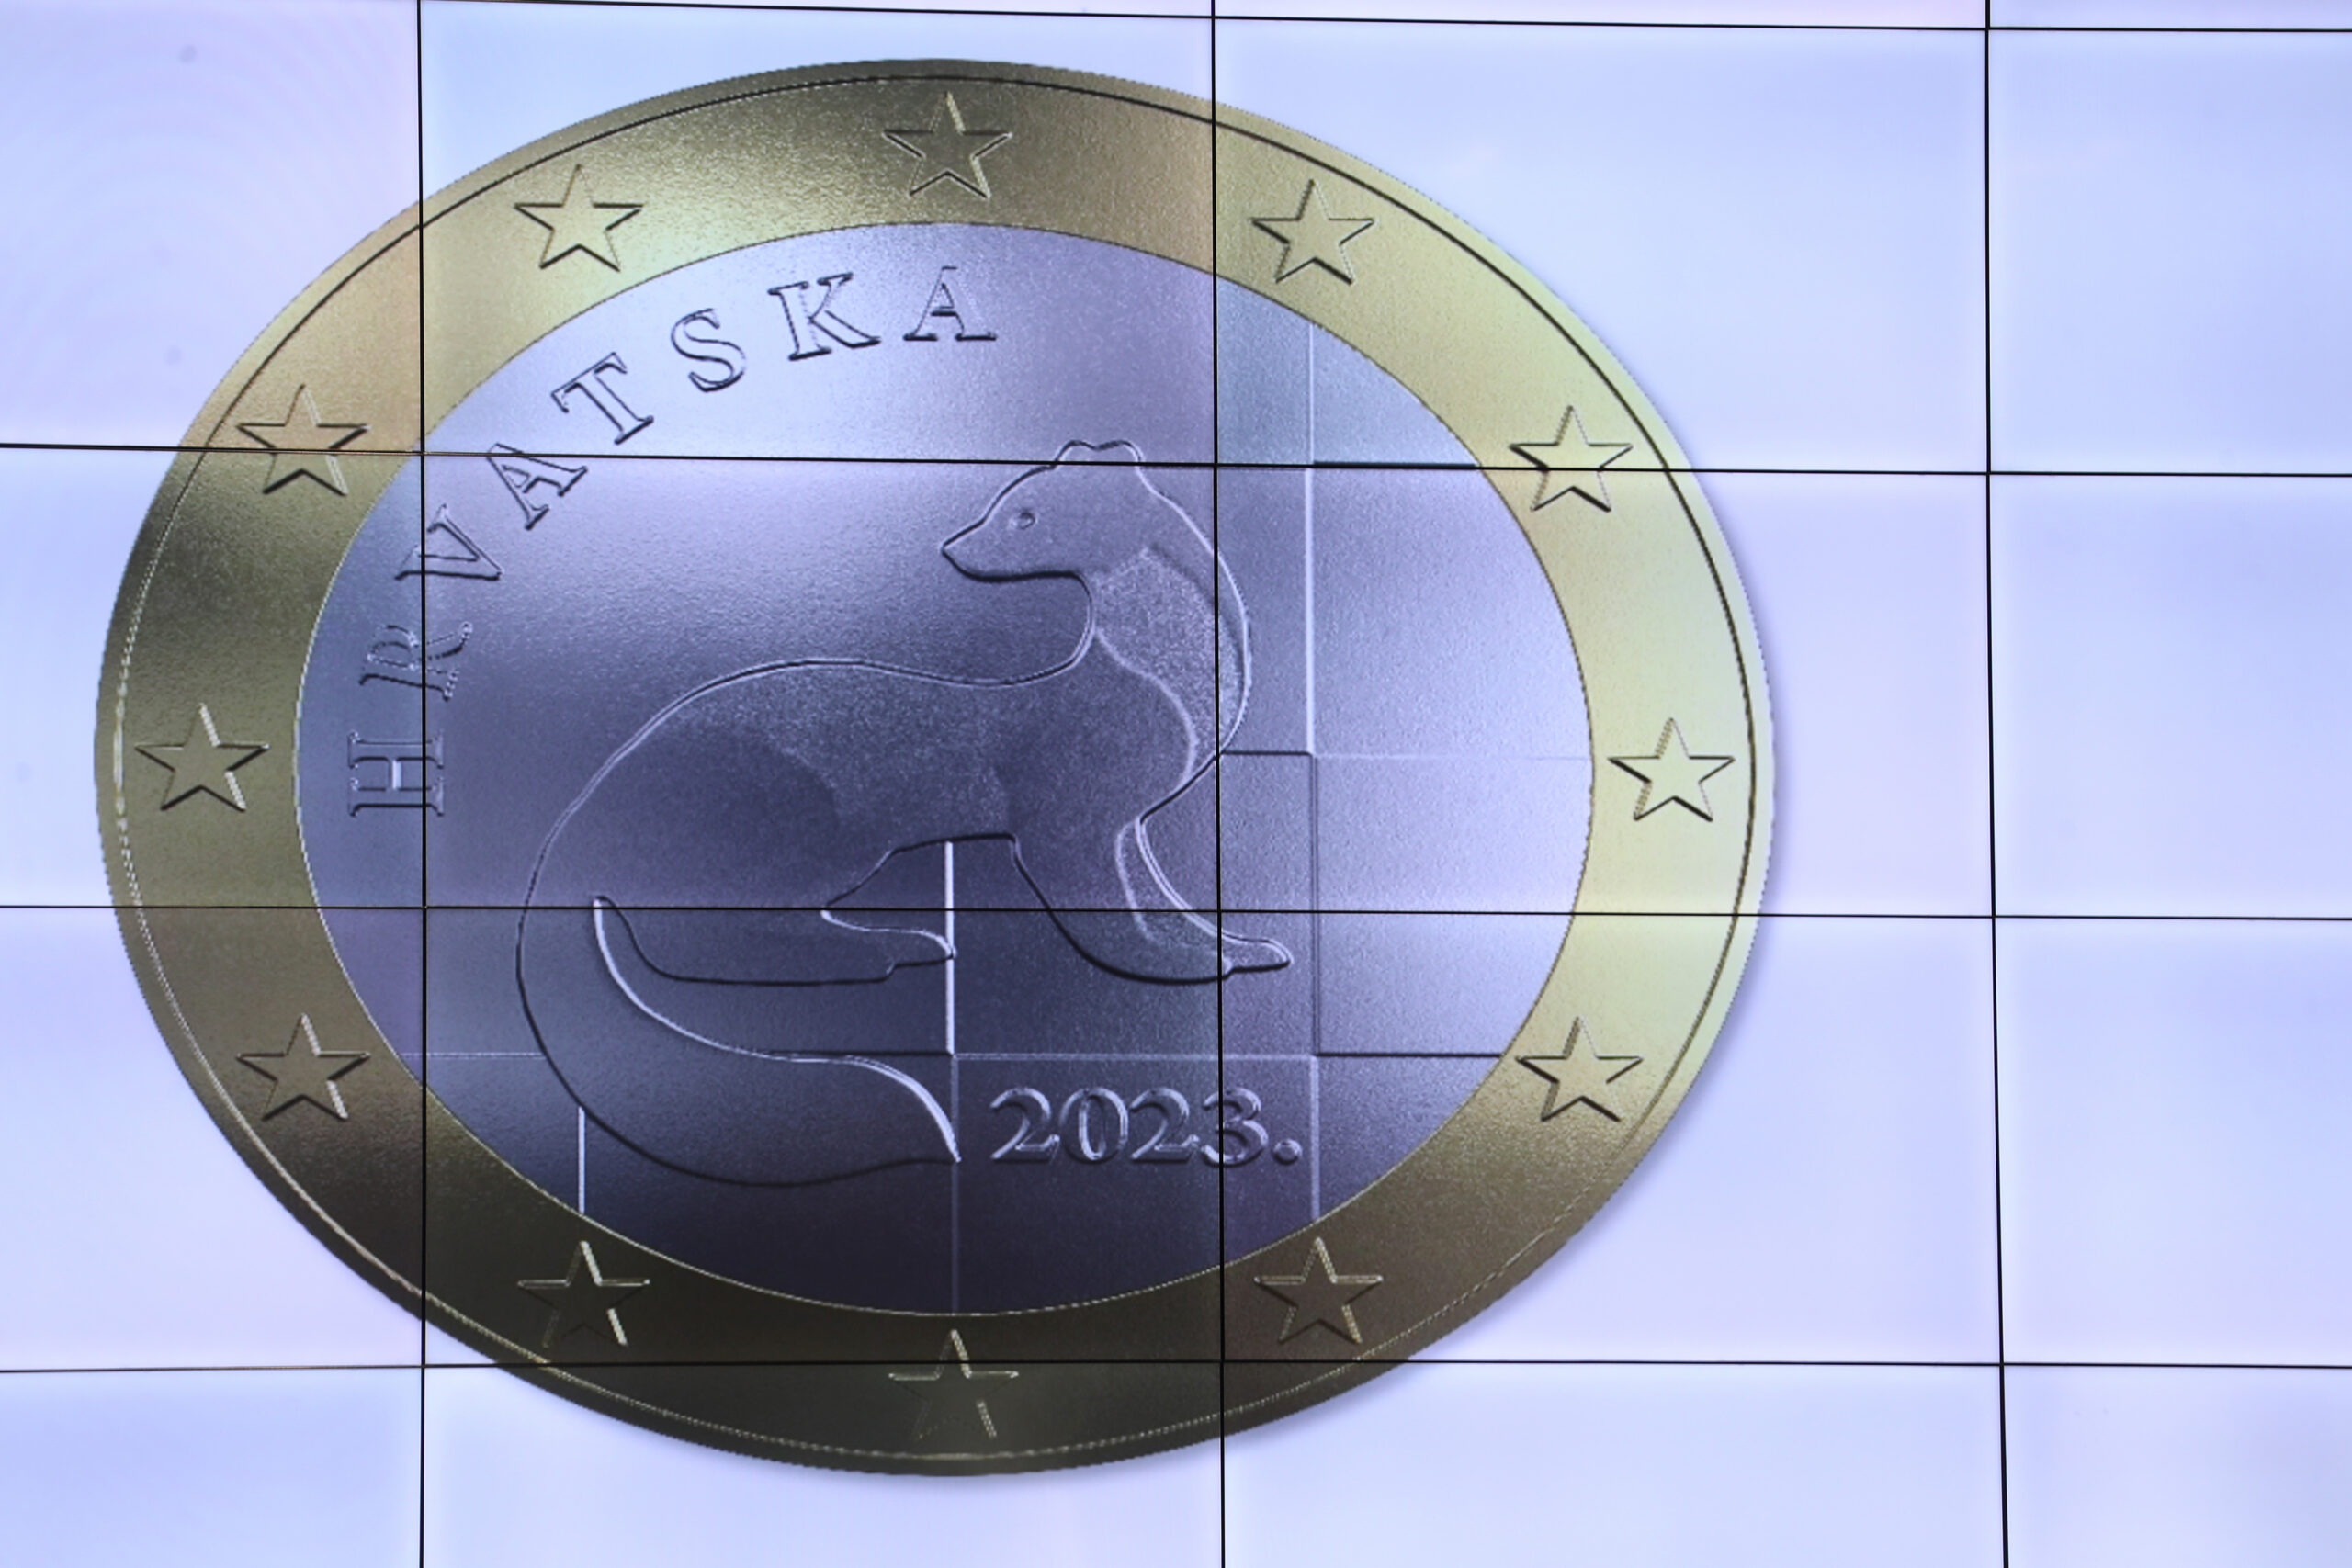 Predstavljen novi hrvatski novčić od jednog evra